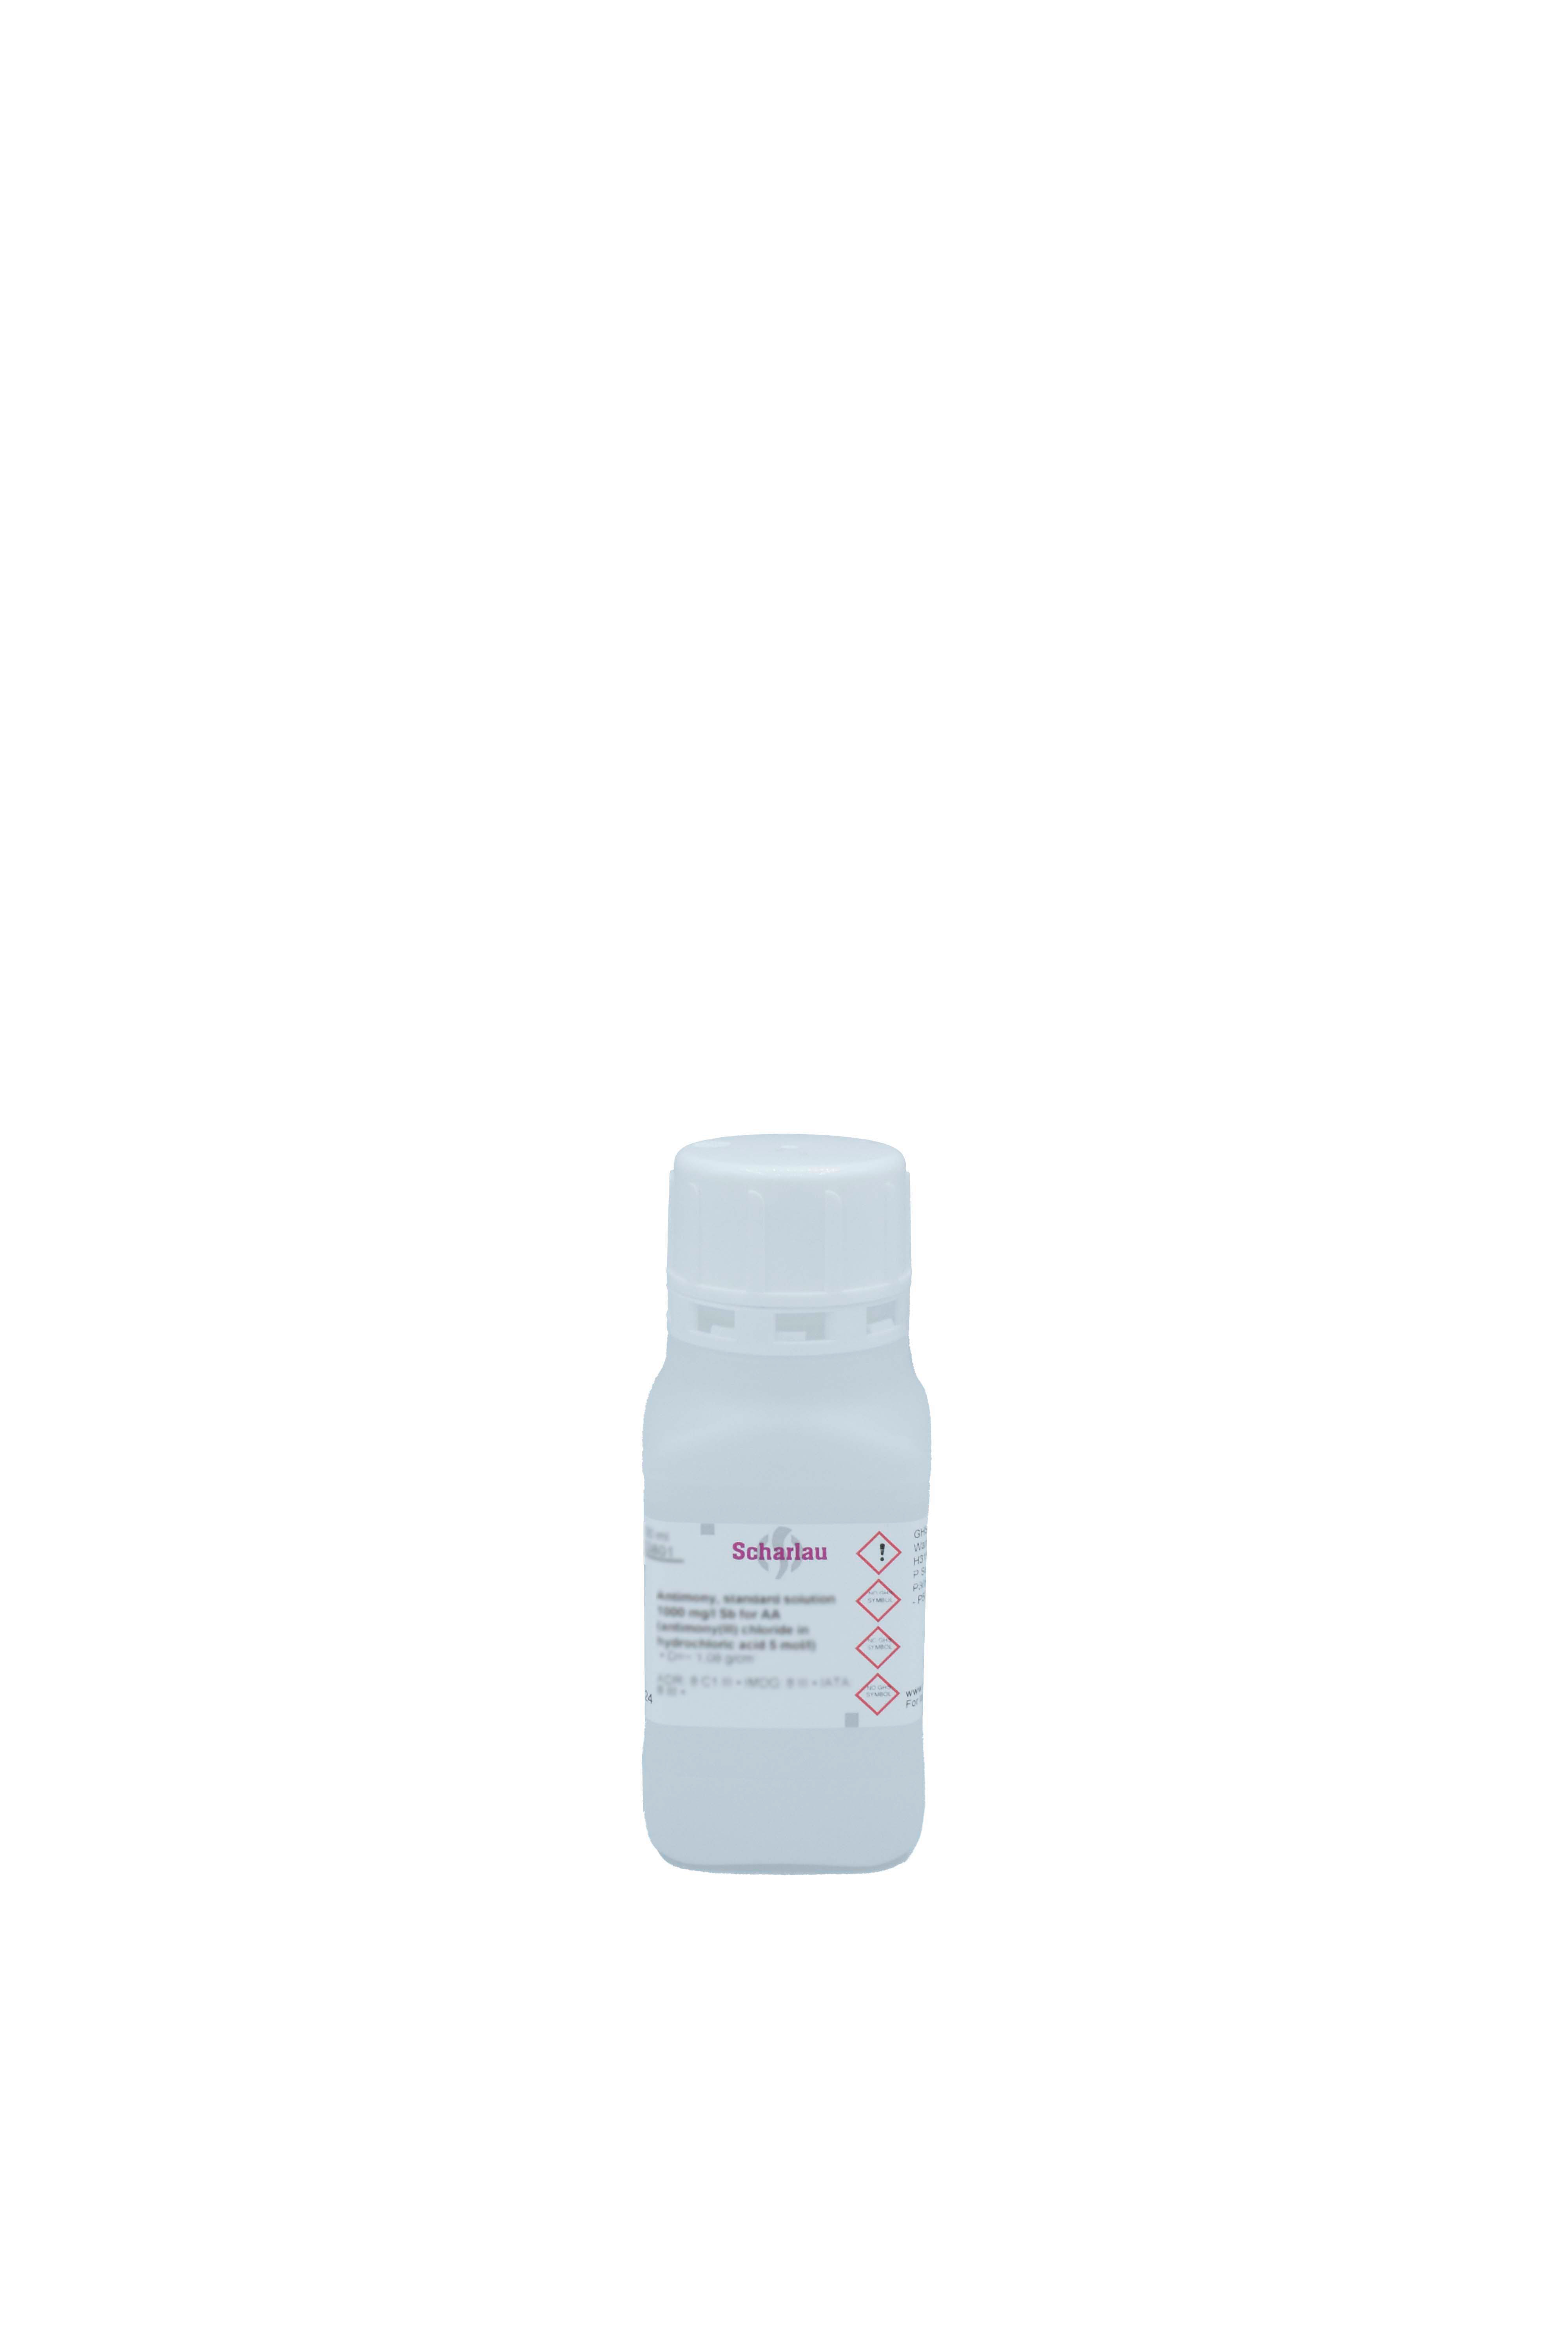 Estroncio, solución patrón 1000 mg/l Sr para AAs (estroncio nitrato en ácido nítrico 0,5 mol/l) 